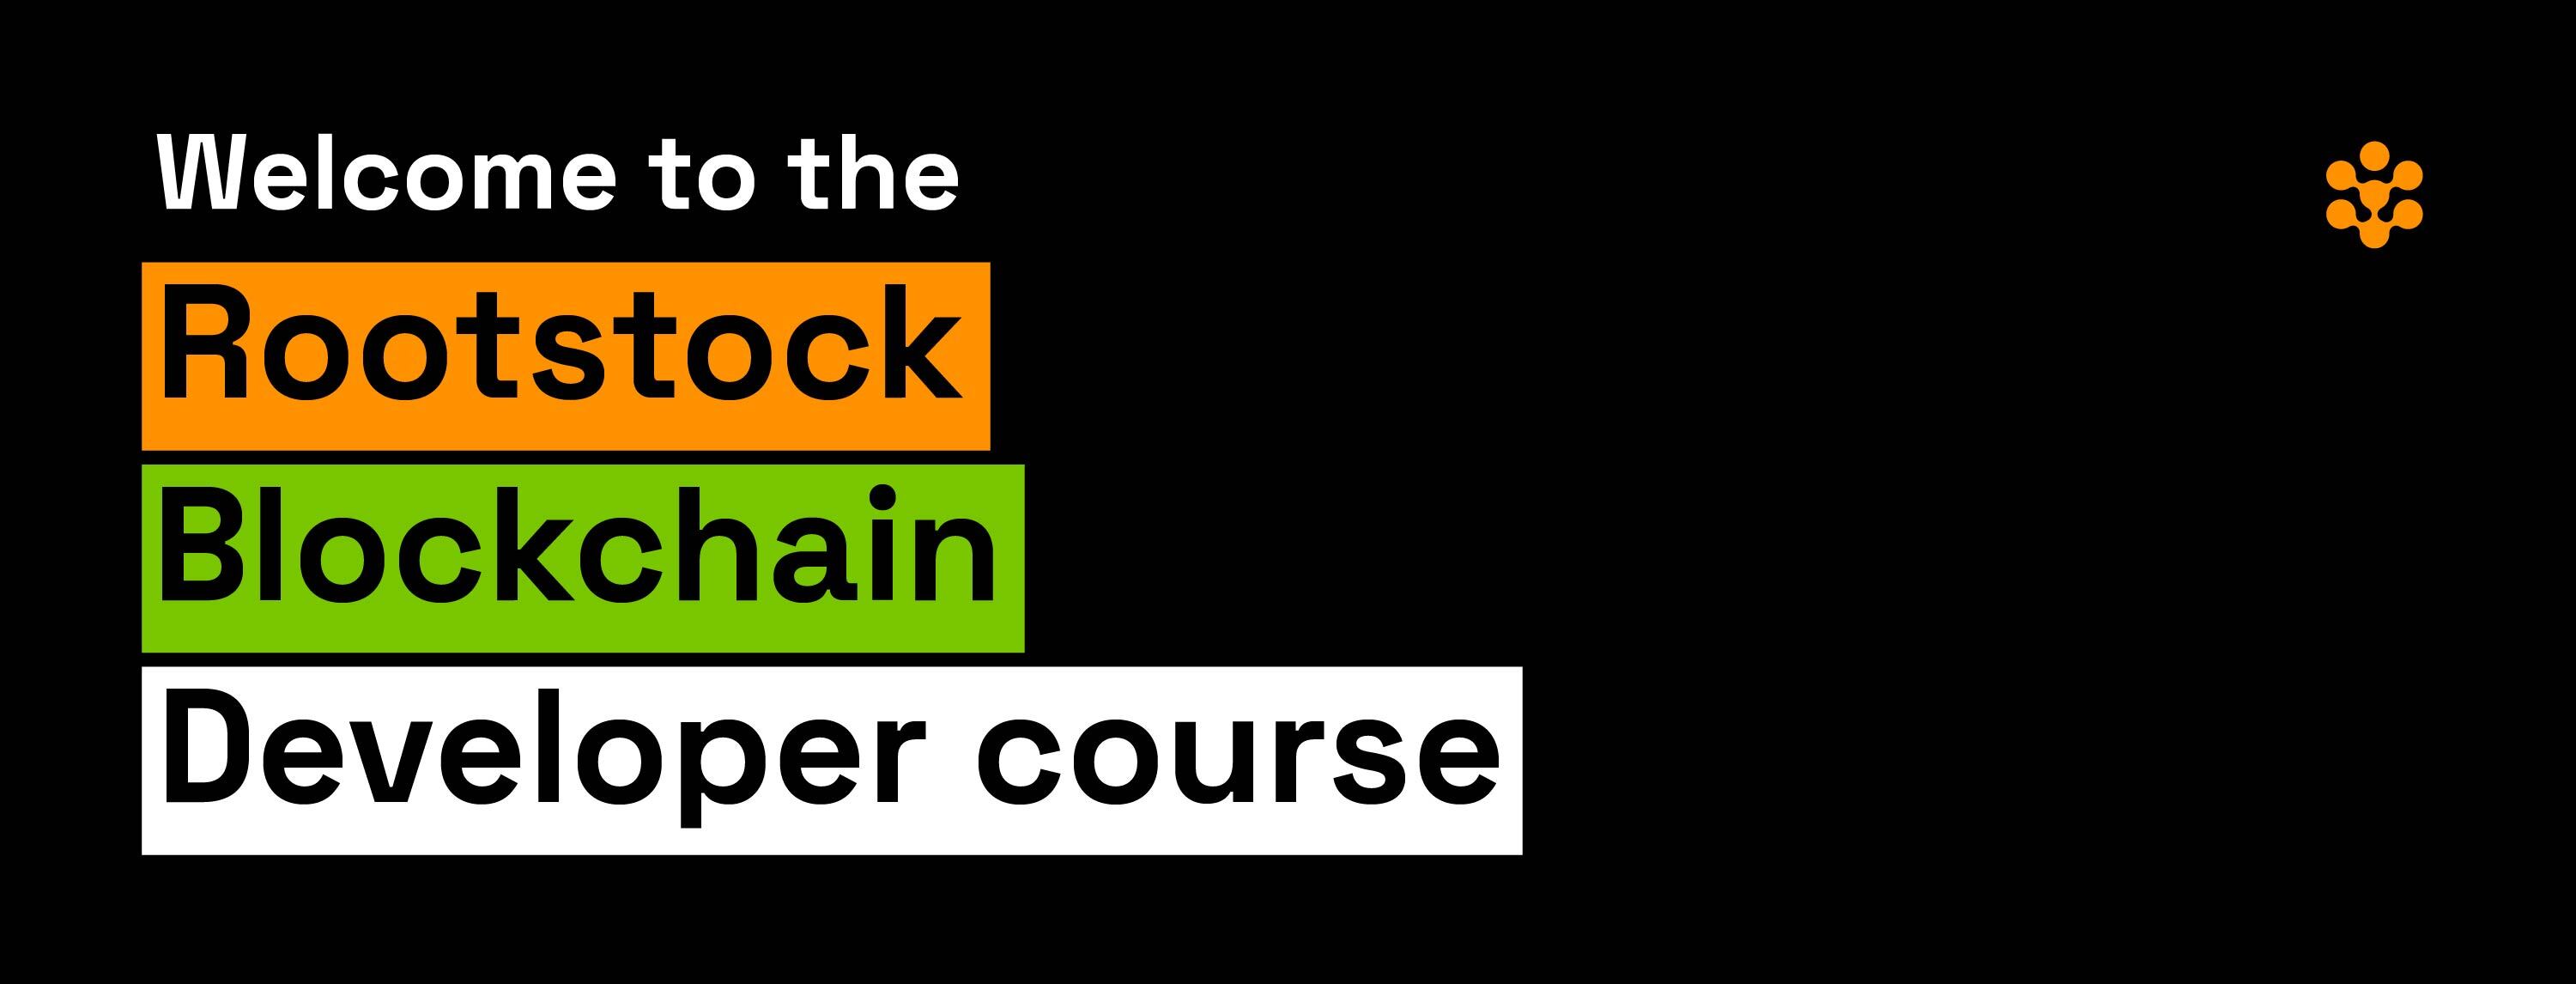 blockchain-developer-banner